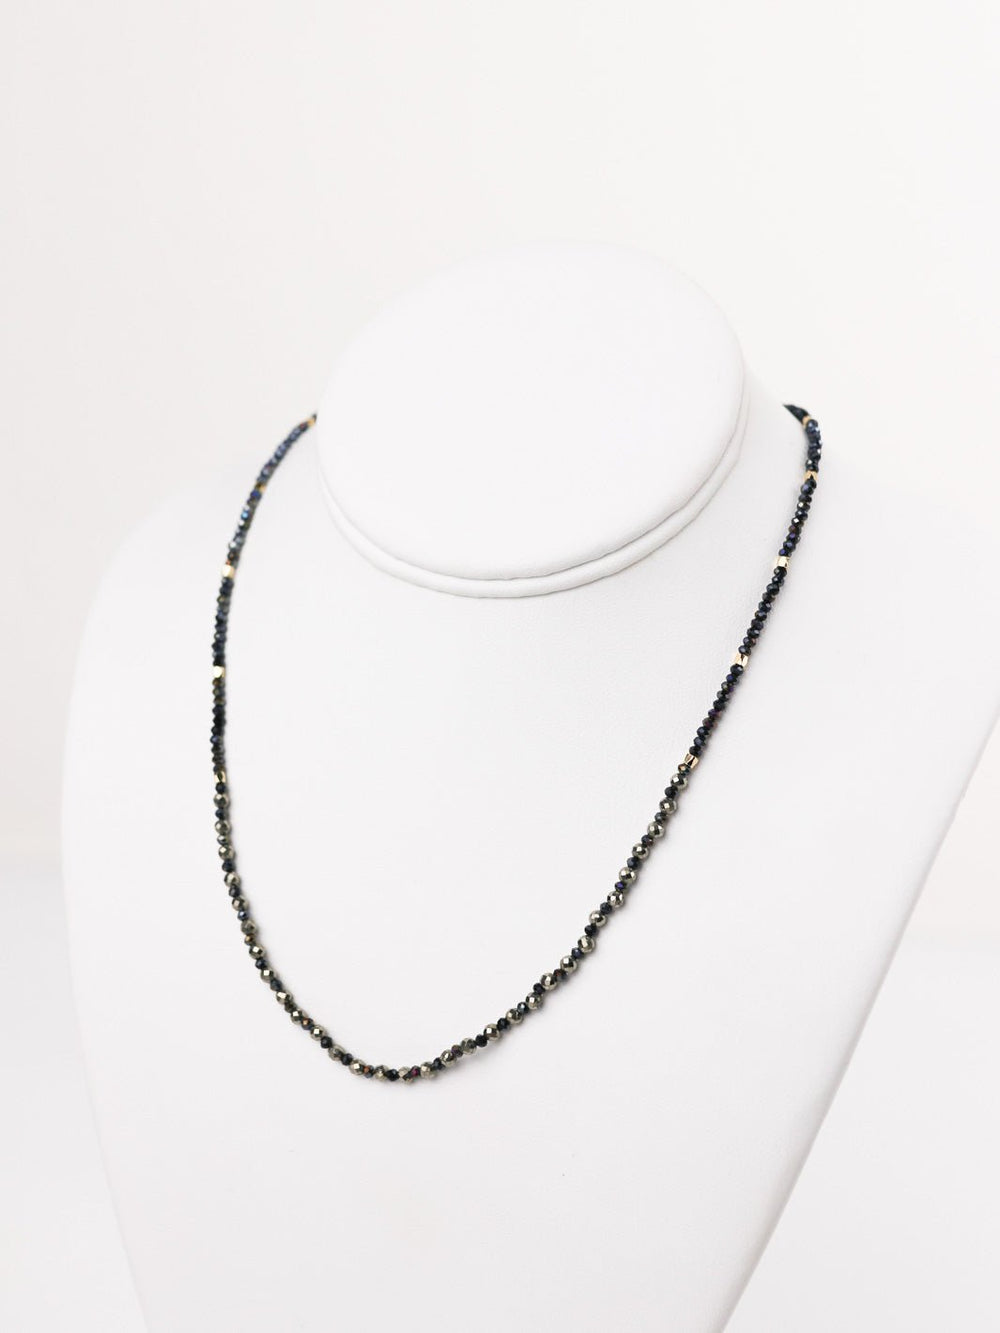 Pyrite Wrap Bracelet + Necklace - Heyday